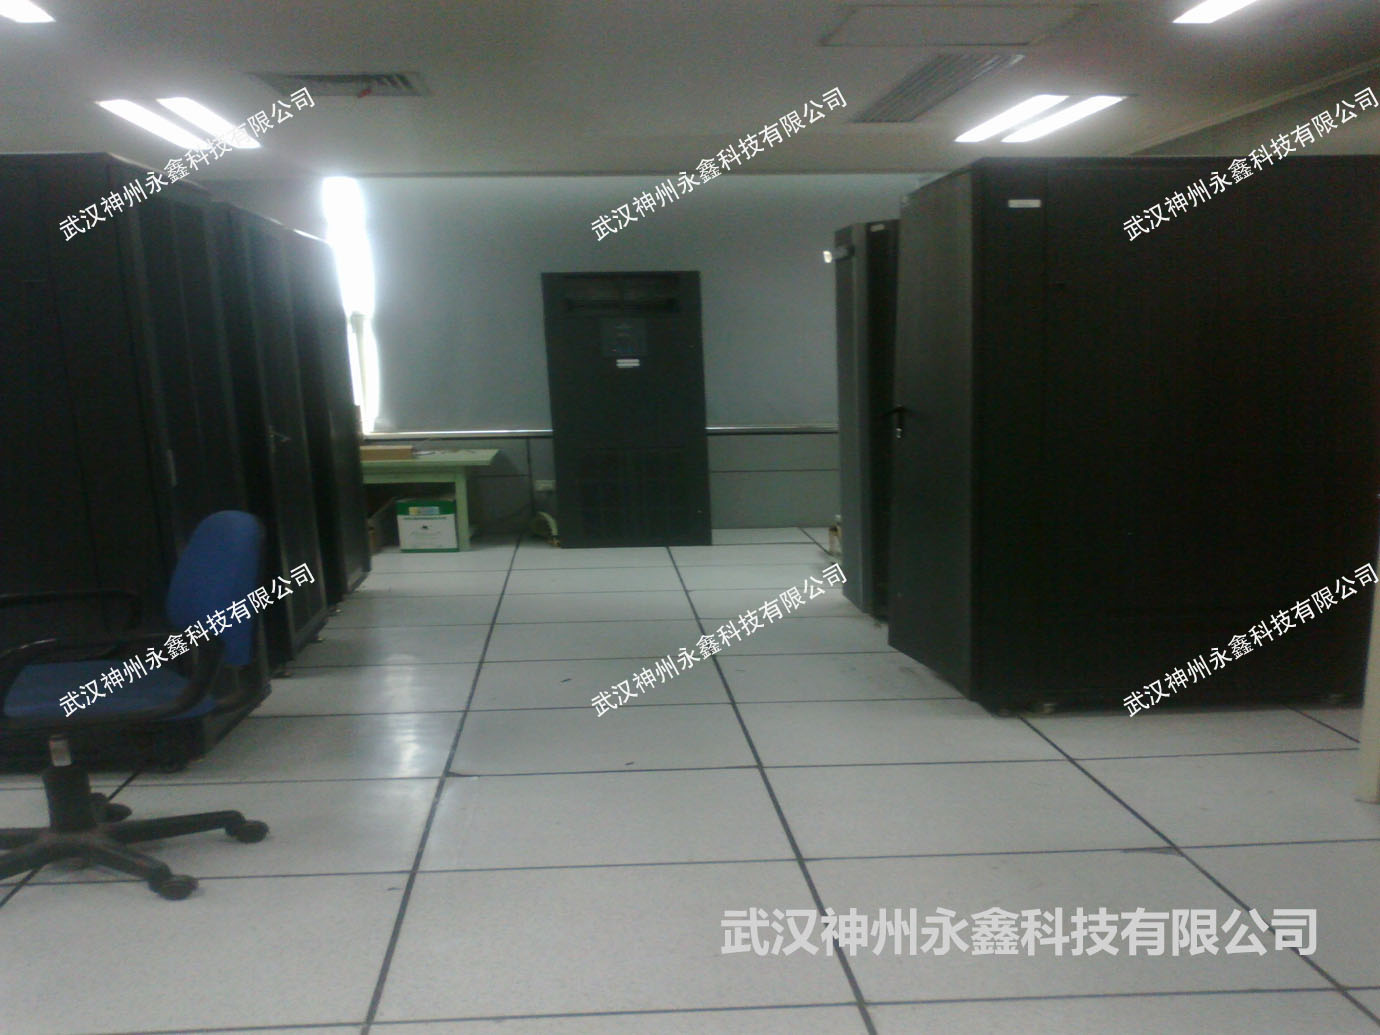 中国科学院武汉分院某研究所机房动环监控系统